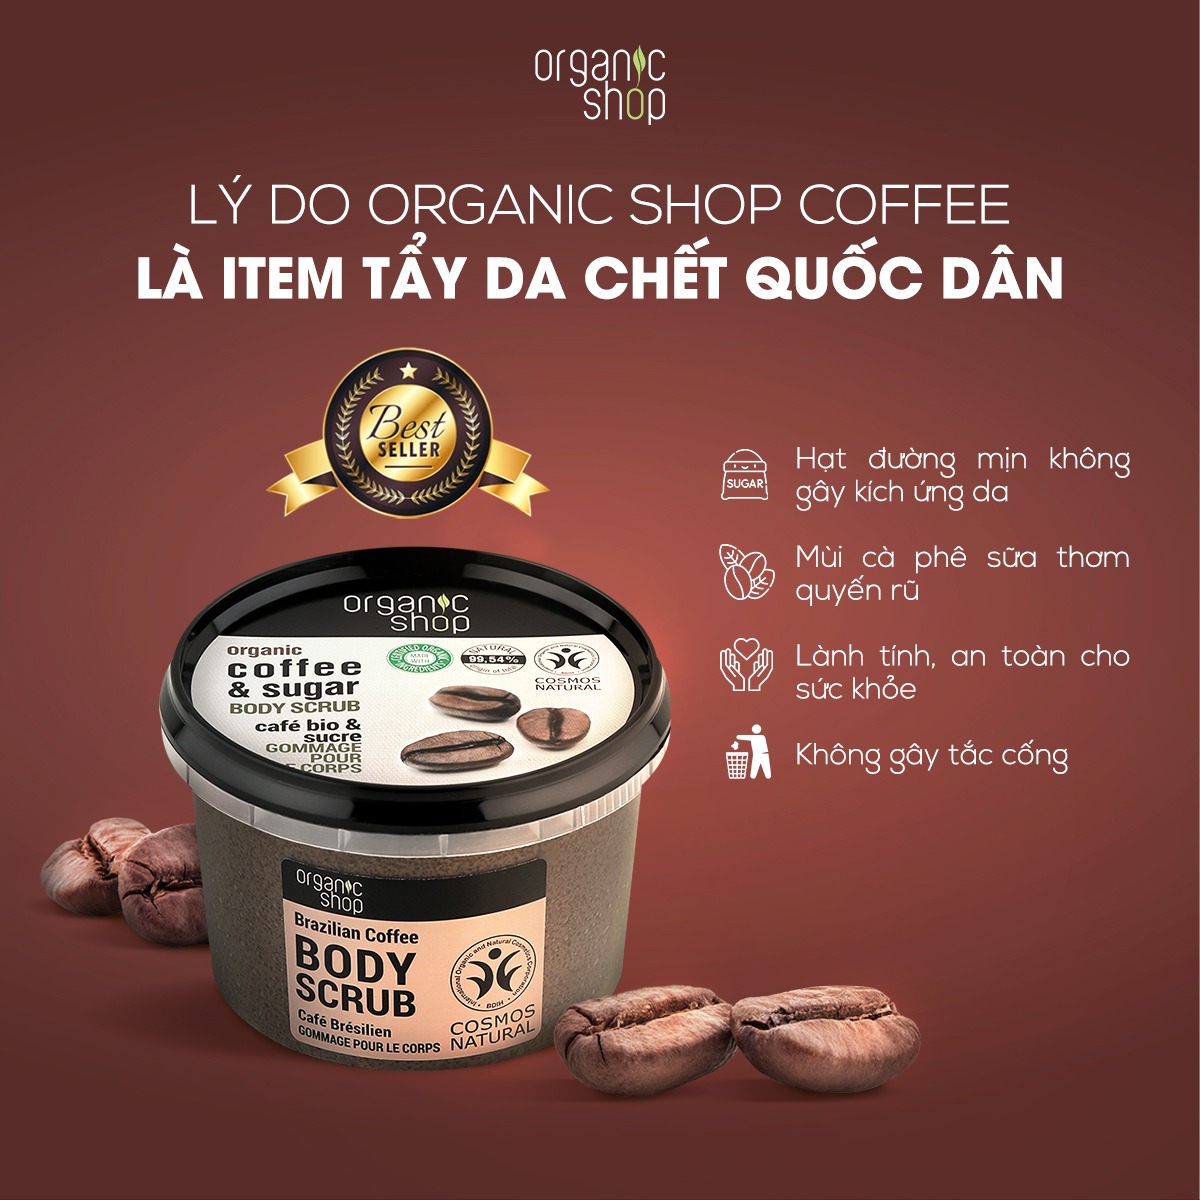 LÝ DO ORGANIC SHOP COFFEE LÀ ITEM TẨY DA CHẾT QUỐC DÂN – Organic Shop Việt  Nam